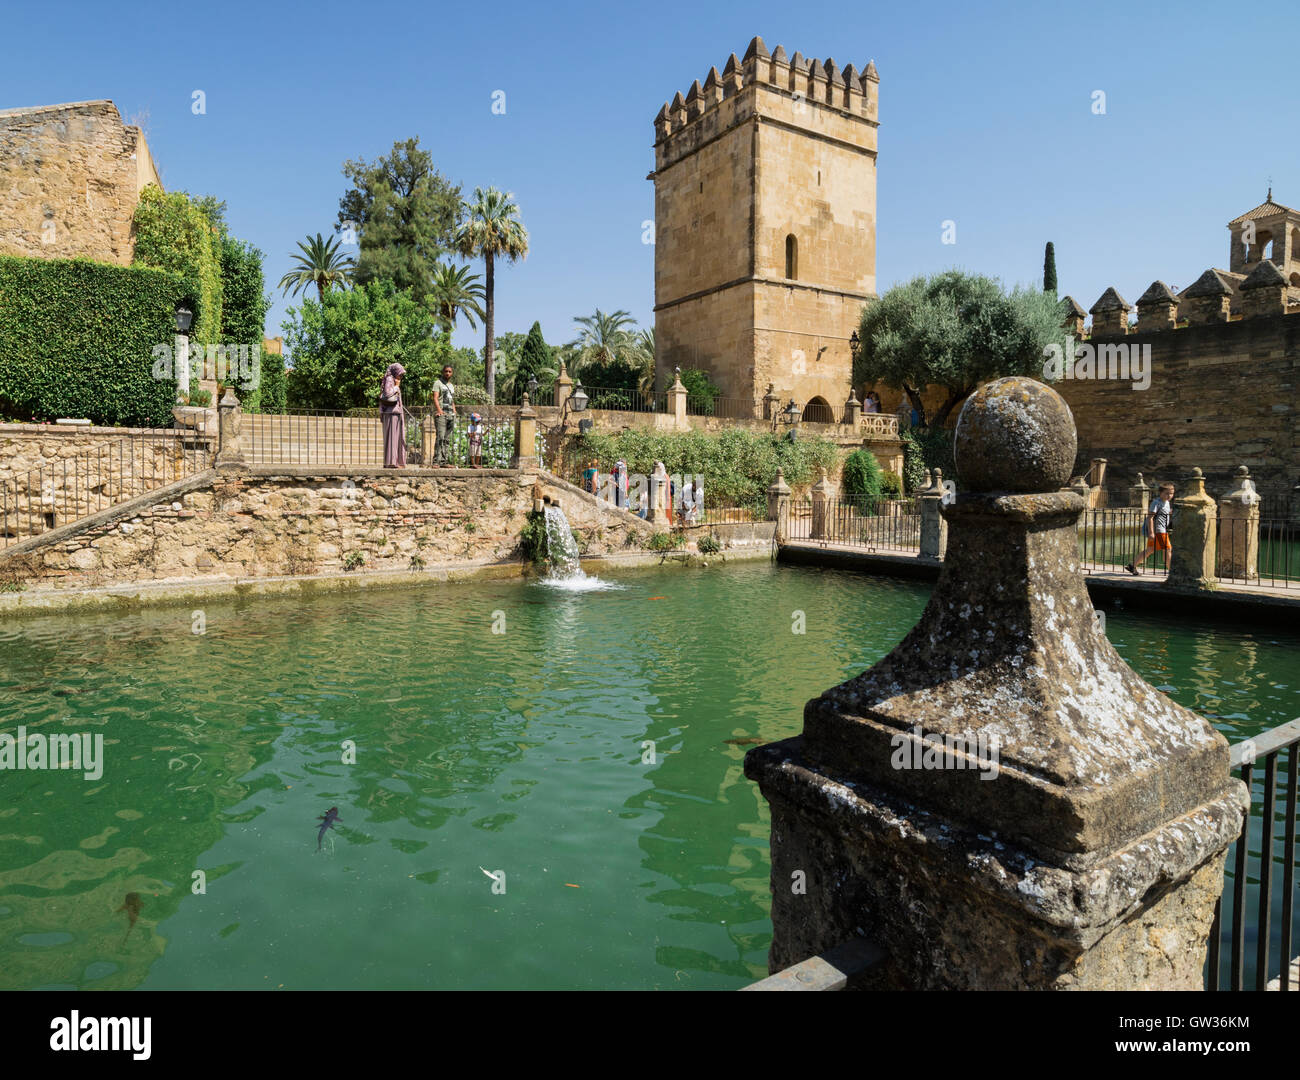 Cordoba, in provincia di Cordoba, Andalusia, Spagna meridionale. Il laghetto nei giardini dell'Alcazar dei Re Cristiani. Foto Stock